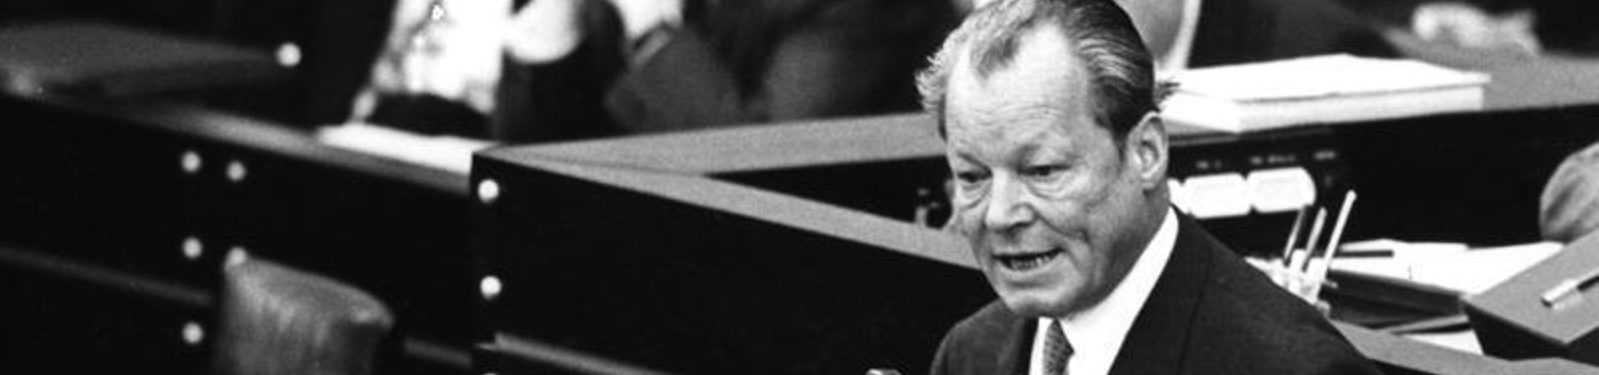 “Krieg ist nicht mehr die ultima ratio, sondern die ultima irratio.” Willy Brandts Grundsatzrede zum Friedensnobelpreis 1971